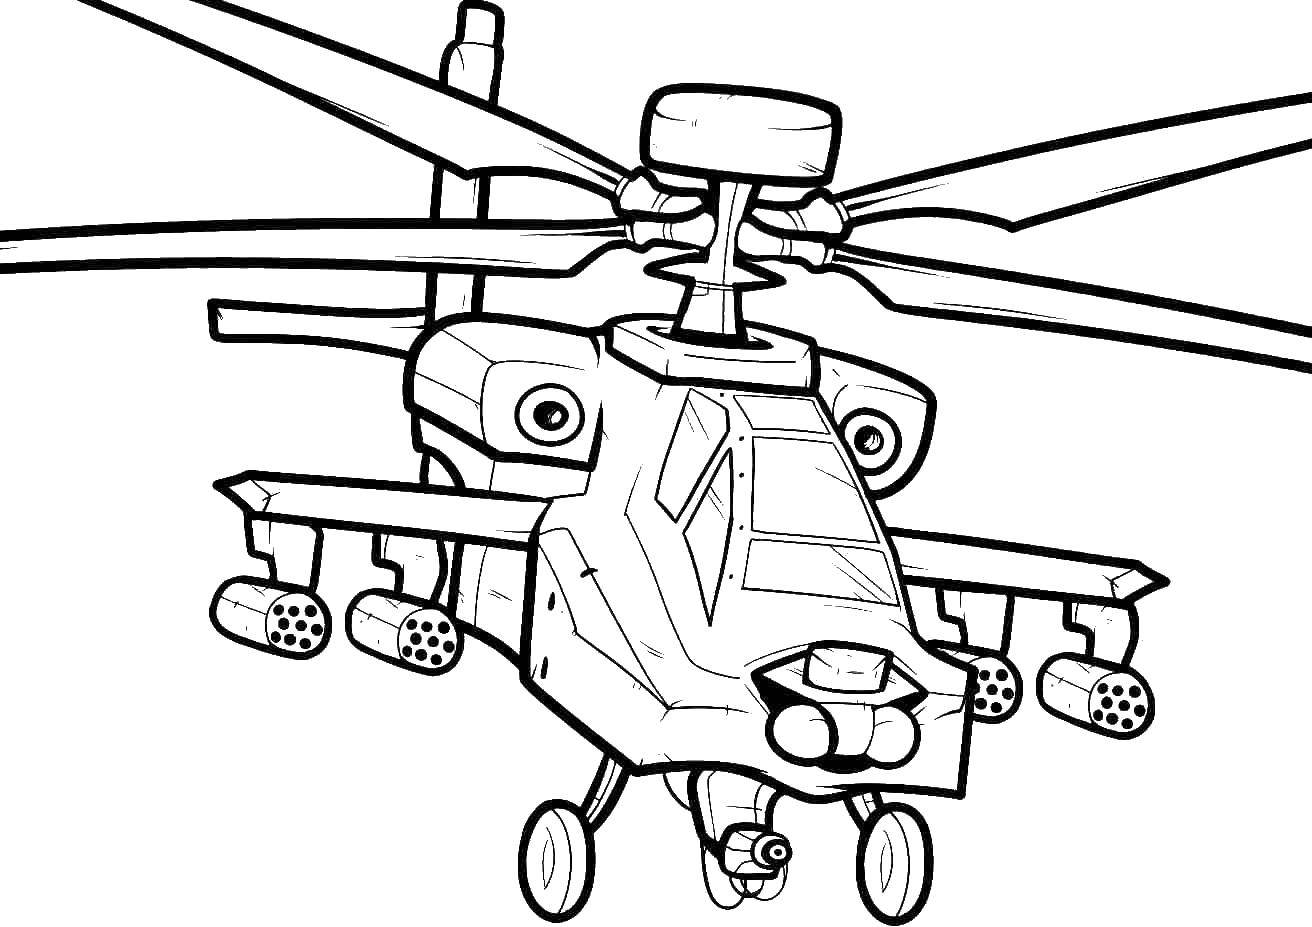 Название: Раскраска Военный вертолет.. Категория: самолеты. Теги: вертолёт, воздушный транспорт, небо, военное.